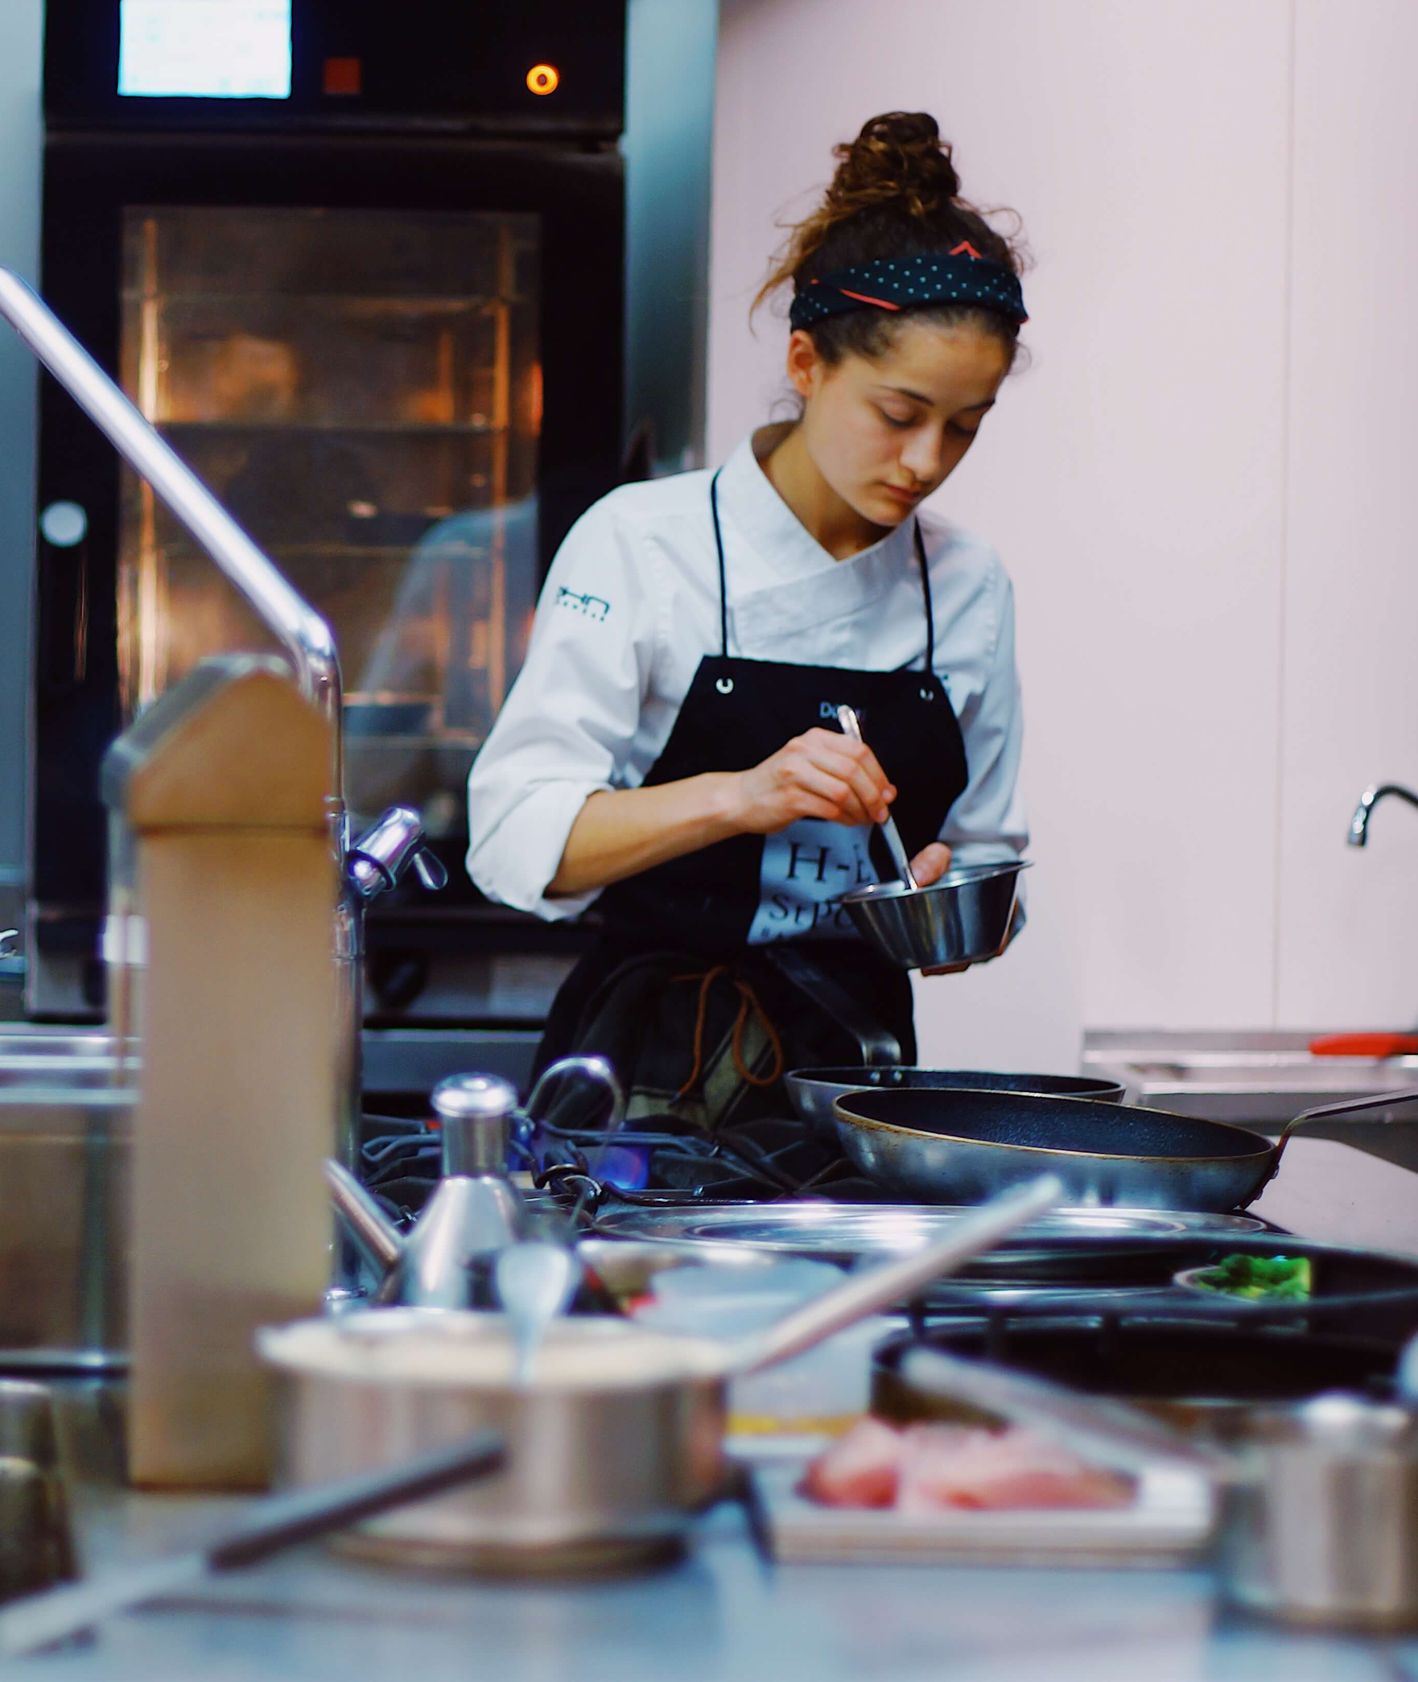 Dziewczyna pracująca w przemysłowej kuchni (fot. Jesus Terres)